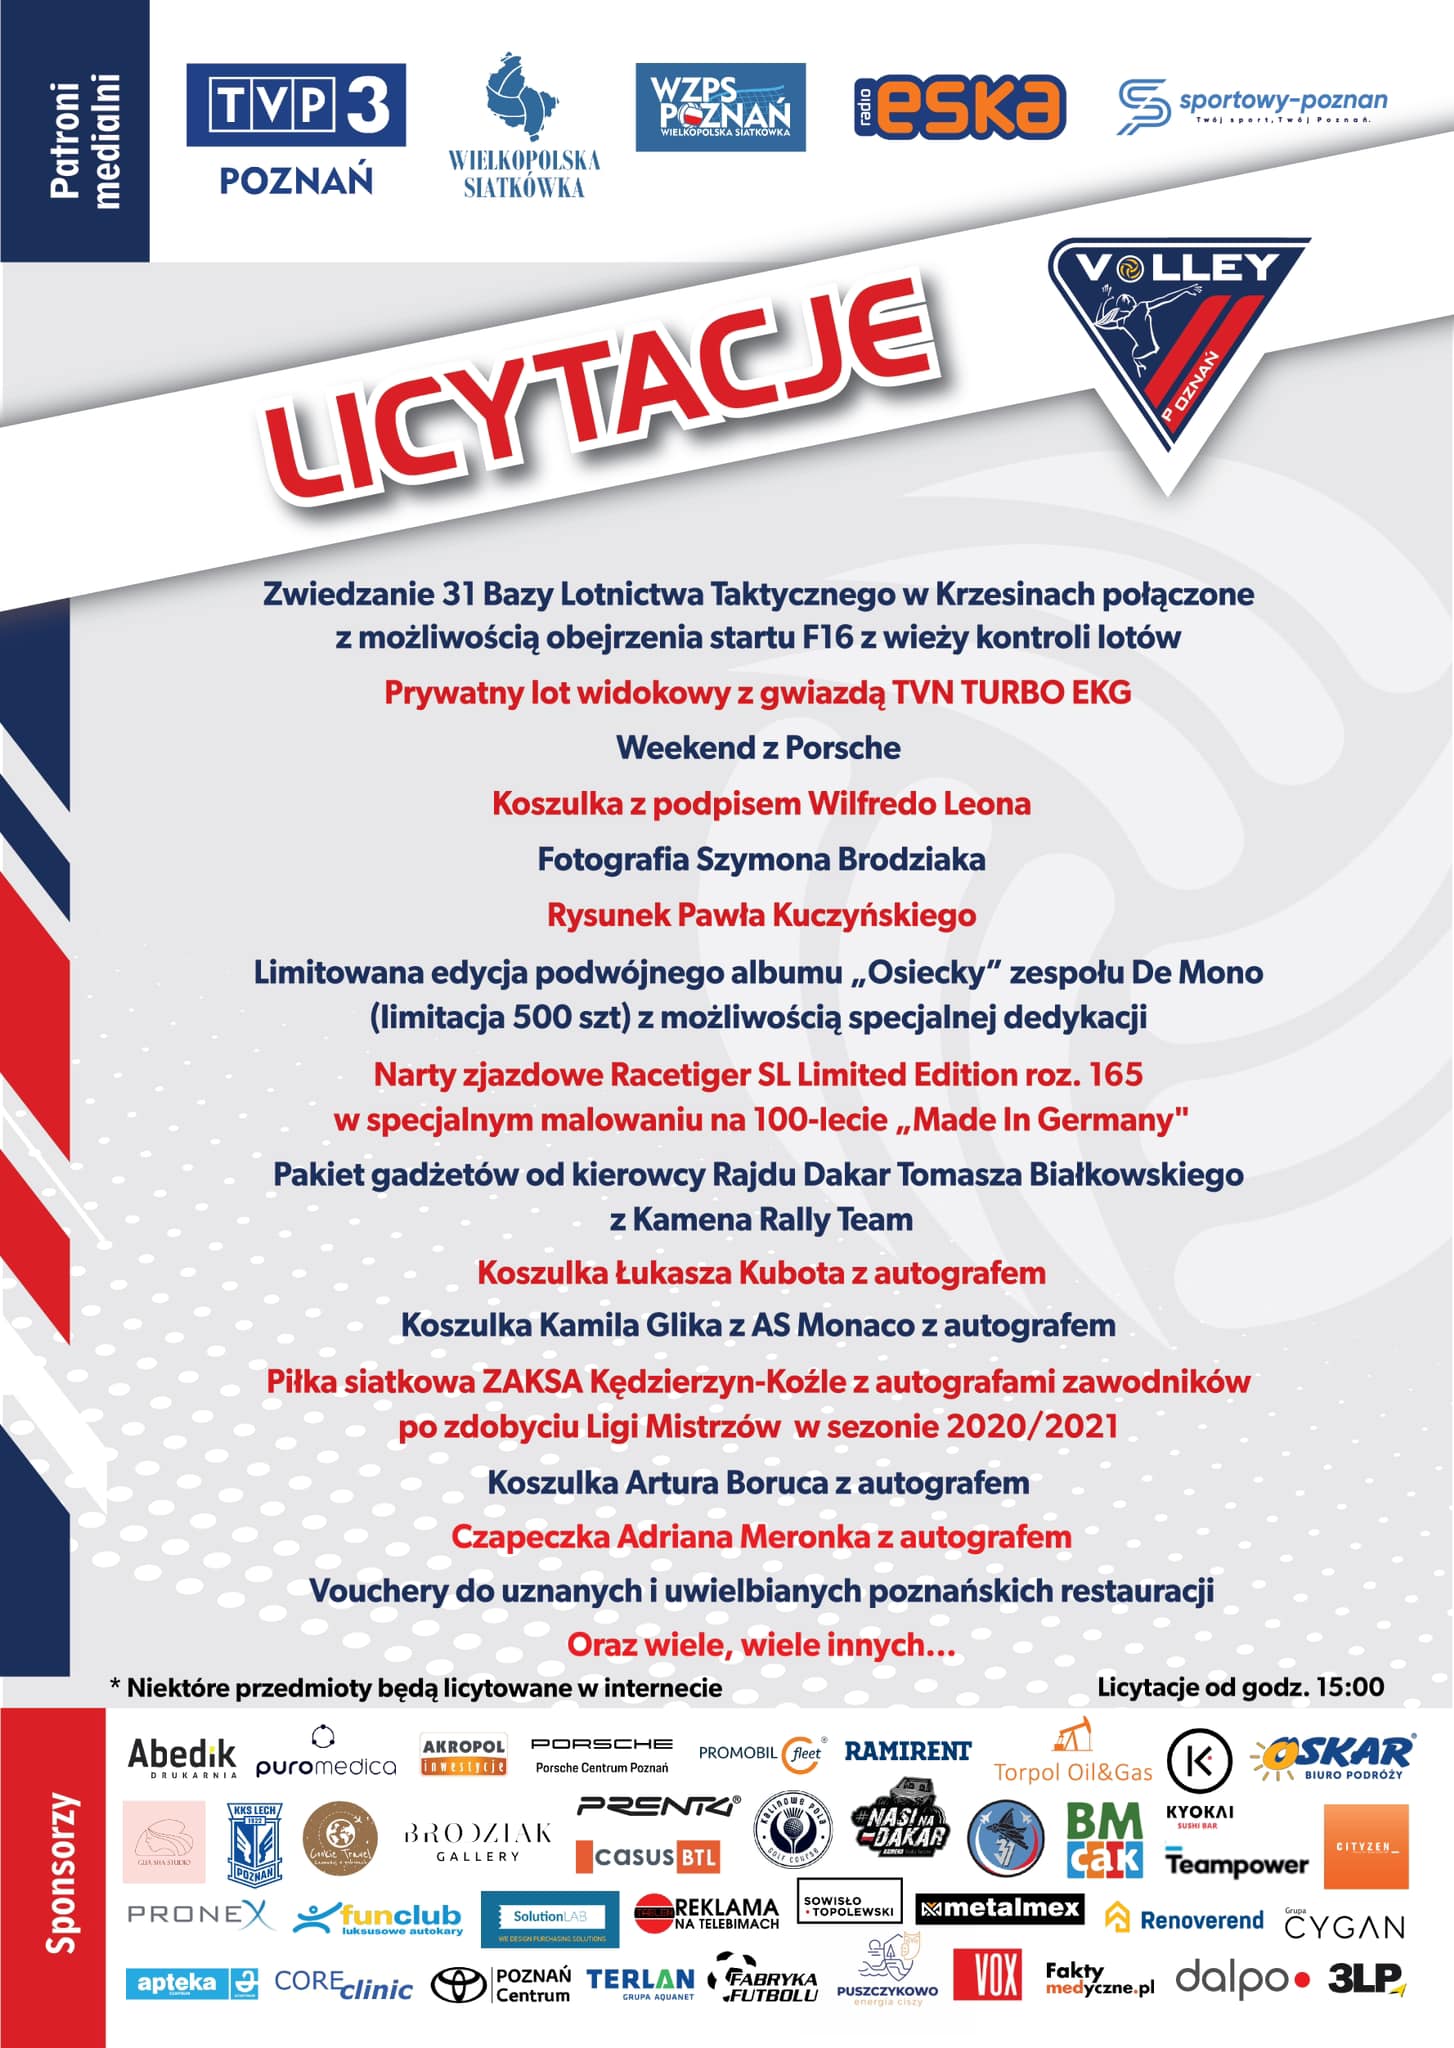 Zapraszamy na Charytatywny II Ogólnopolski Turniej Mini Piłki Siatkowej kat. „trójek” o Puchar Burmistrza Puszczykowa.